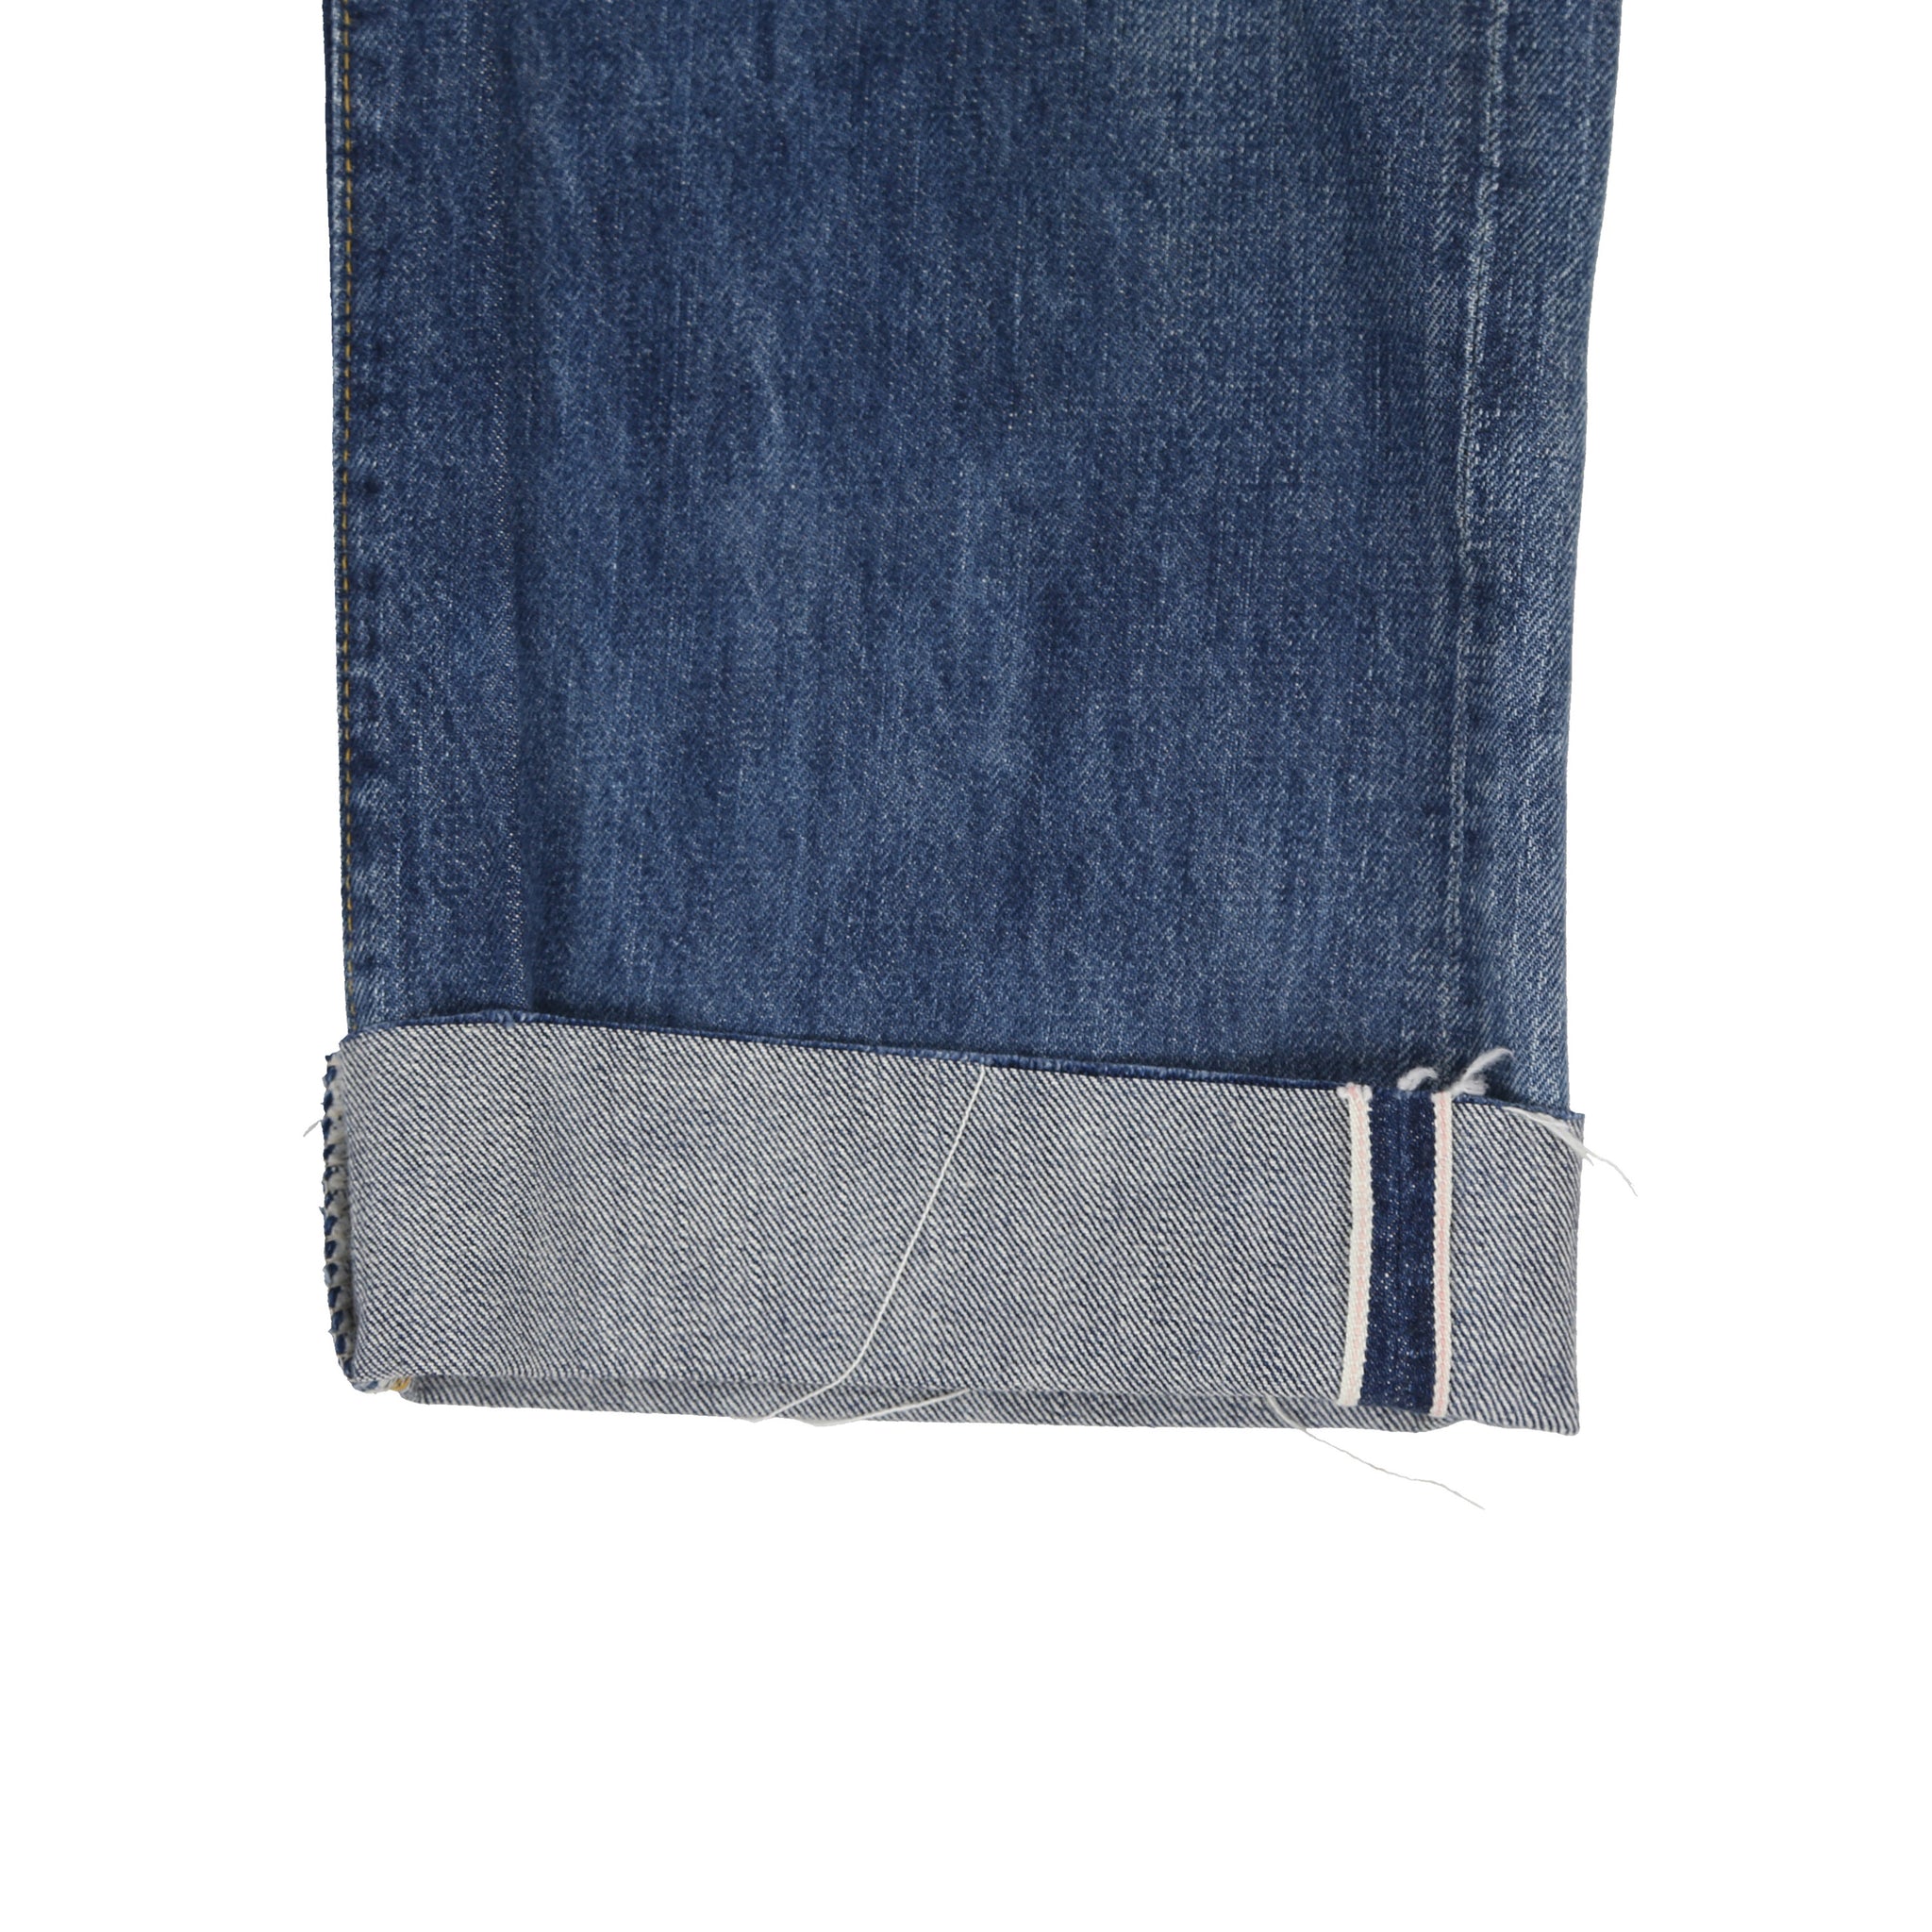 Levis LVC 501XX Big E Selvedge Denim Jeans